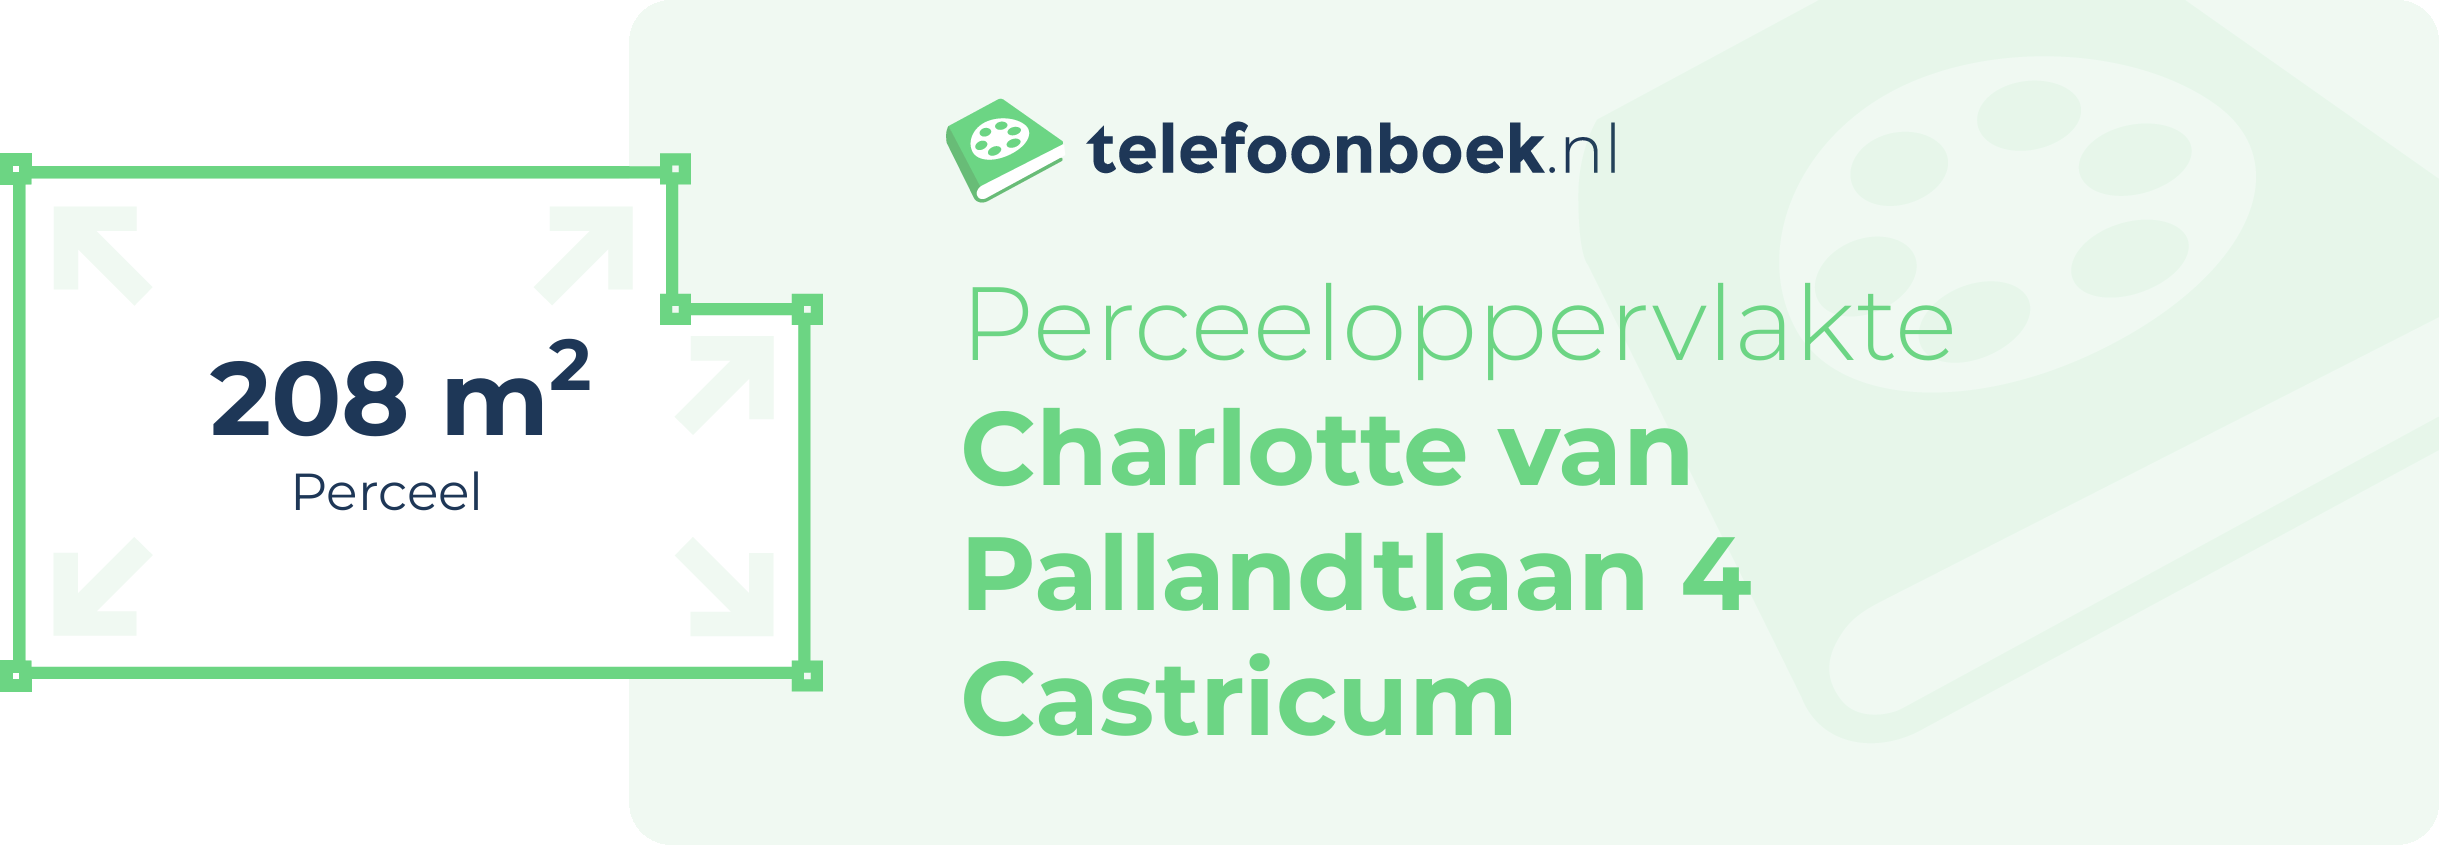 Perceeloppervlakte Charlotte Van Pallandtlaan 4 Castricum